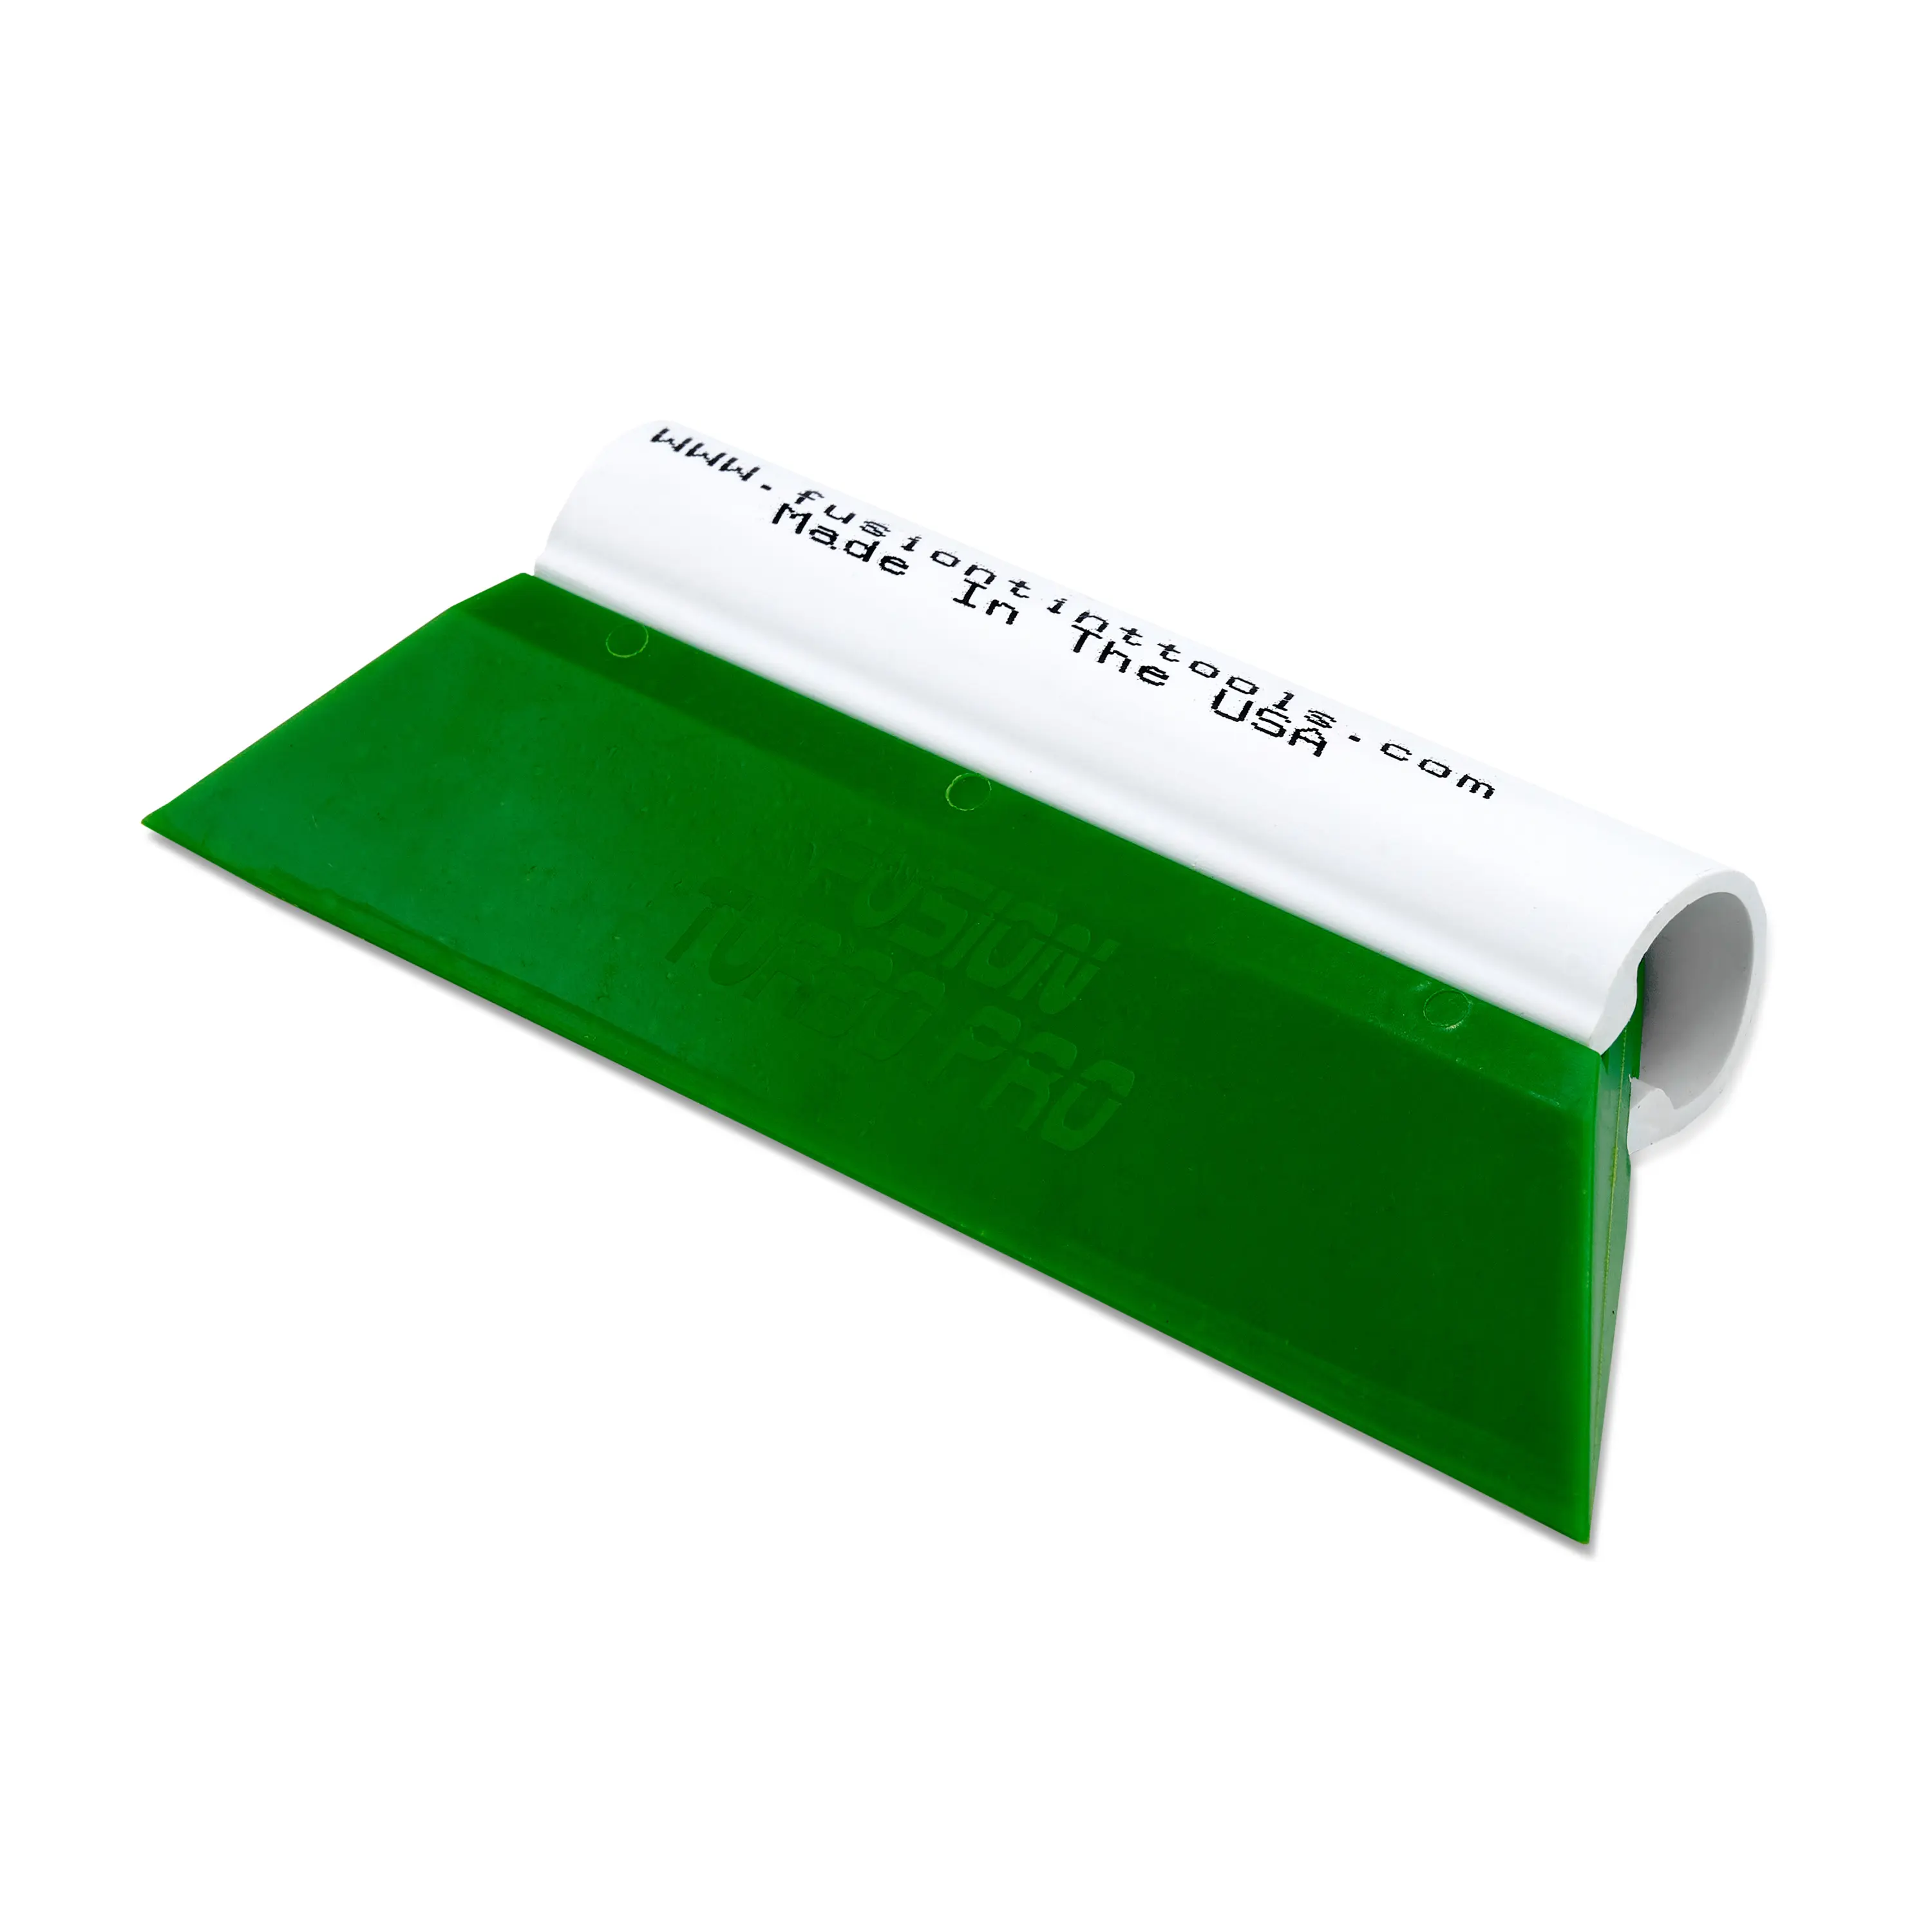 Выгонка FUSION TURBO PRO зеленая с пластиковой ручкой, 14 см.